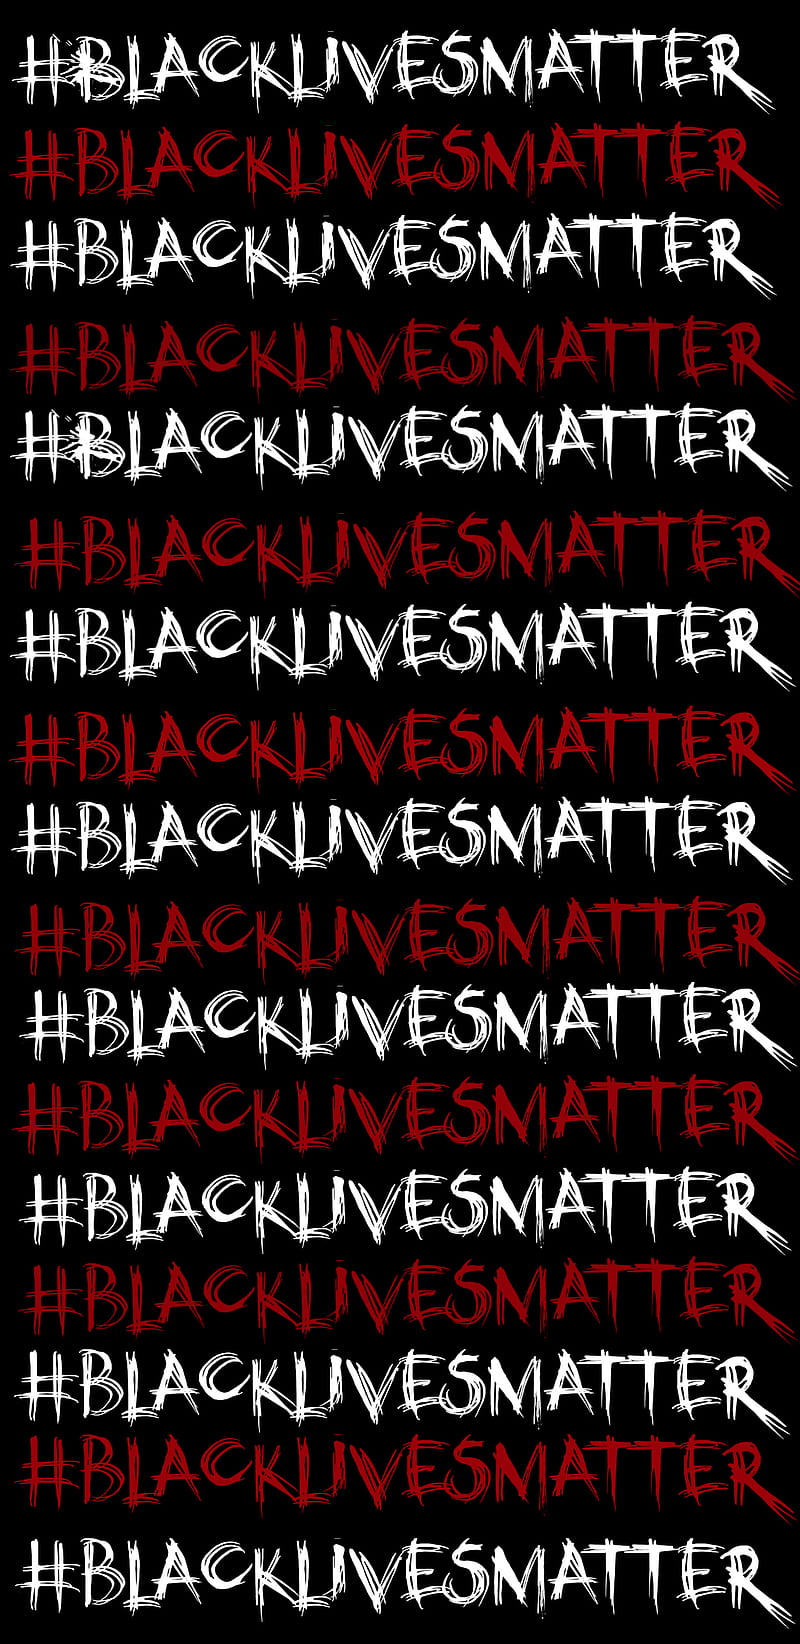 1500 Black Lives Matter Pictures  Download Free Images on Unsplash